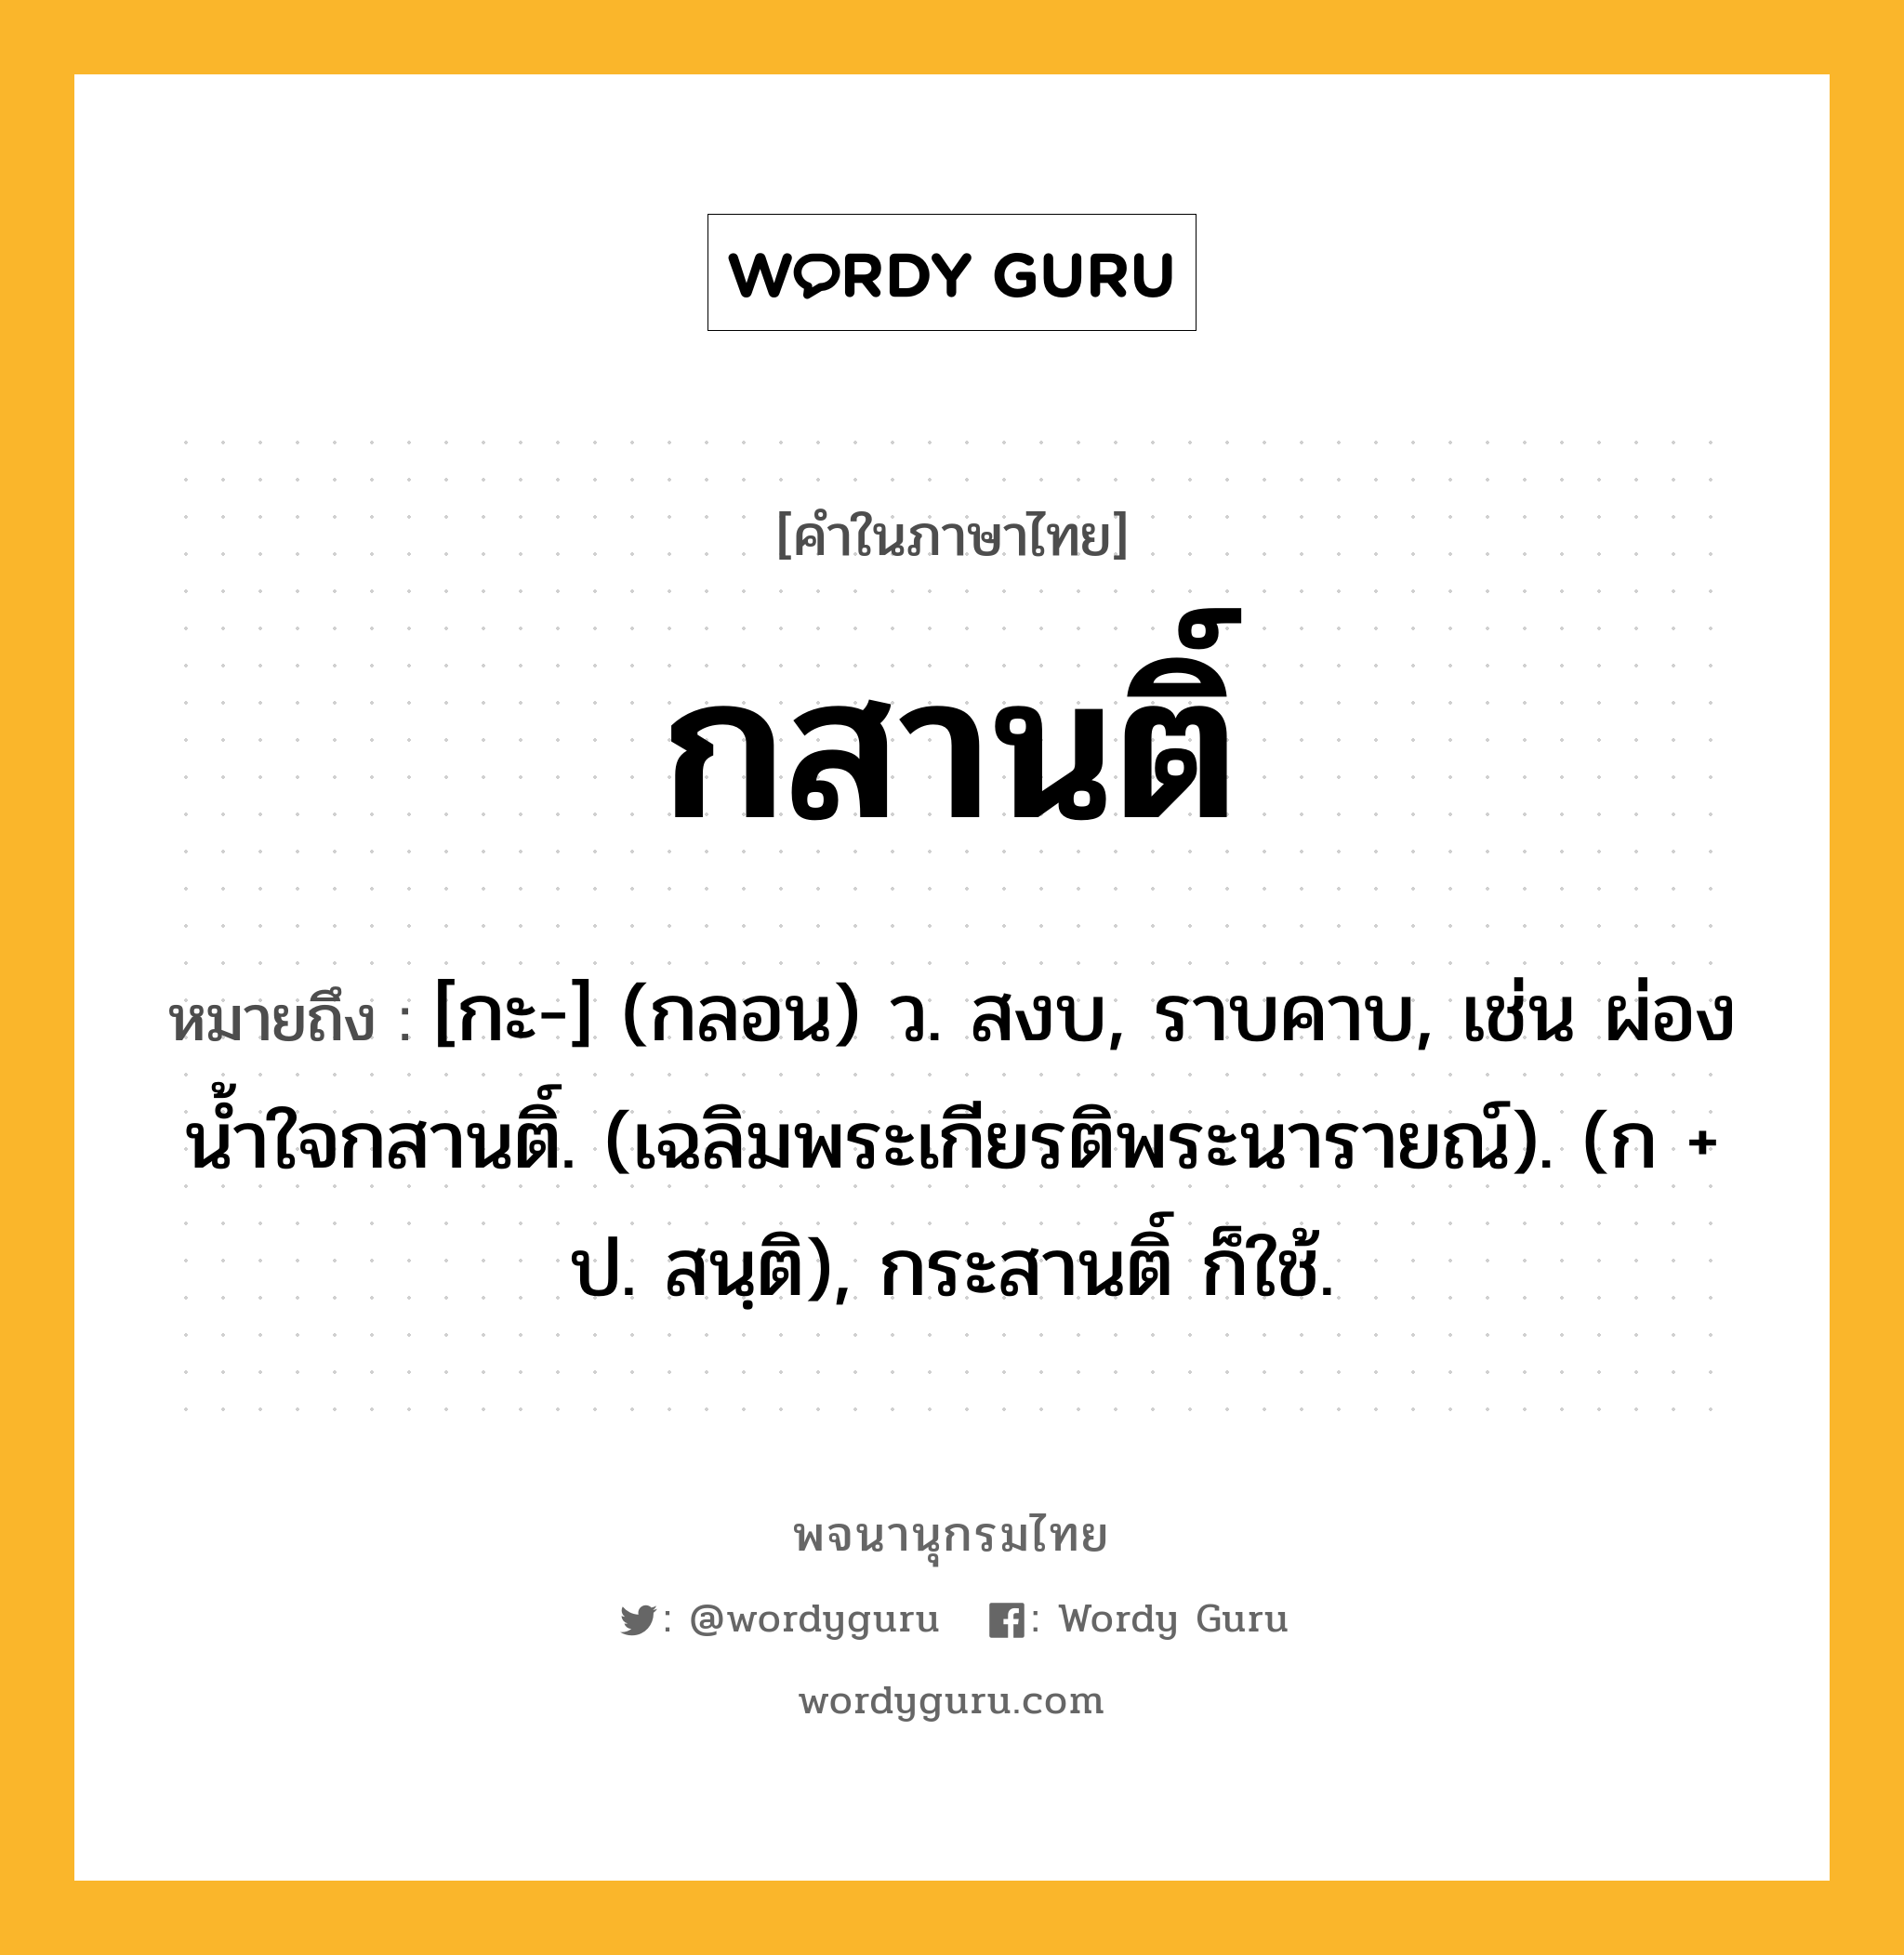 กสานติ์ หมายถึงอะไร?, คำในภาษาไทย กสานติ์ หมายถึง [กะ-] (กลอน) ว. สงบ, ราบคาบ, เช่น ผ่องนํ้าใจกสานติ์. (เฉลิมพระเกียรติพระนารายณ์). (ก + ป. สนฺติ), กระสานติ์ ก็ใช้.